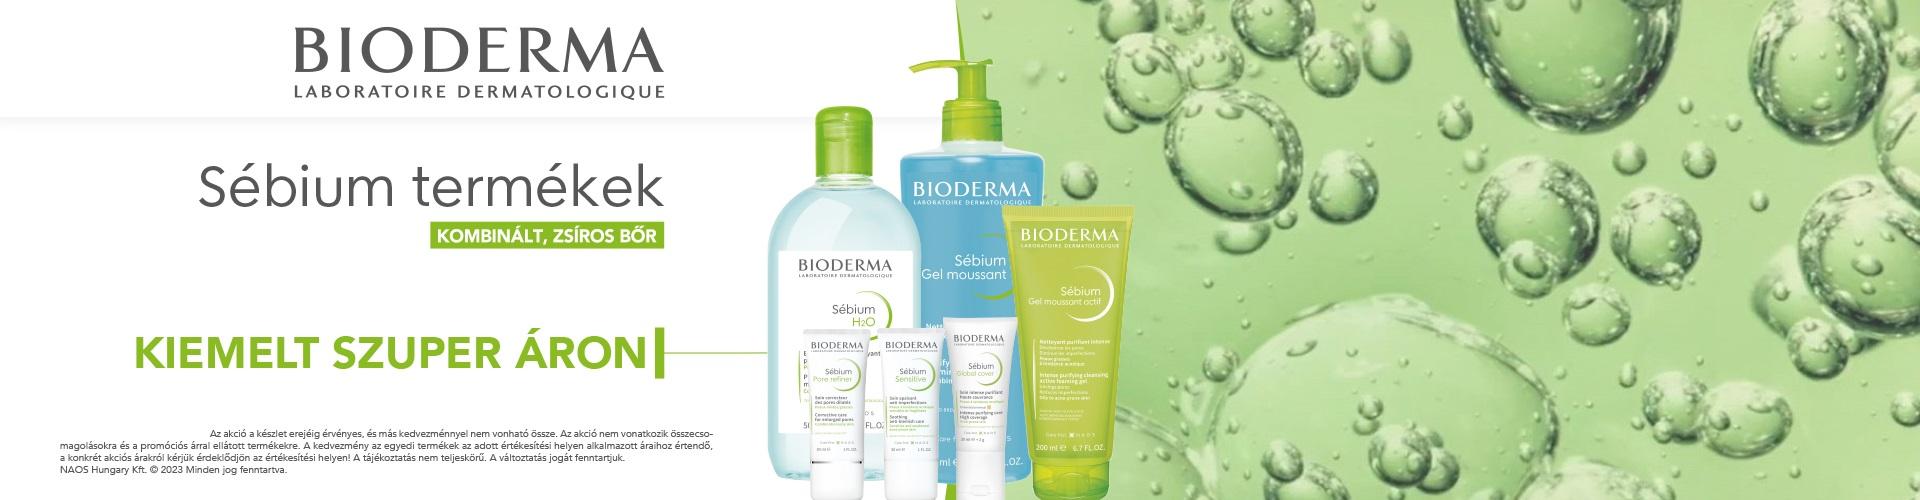 Bioderma Sébium hatékony megoldást kínál a vegyes-zsíros bőrűeknek a tisztálkodás és bőrápolás területén a problémák orvoslására.